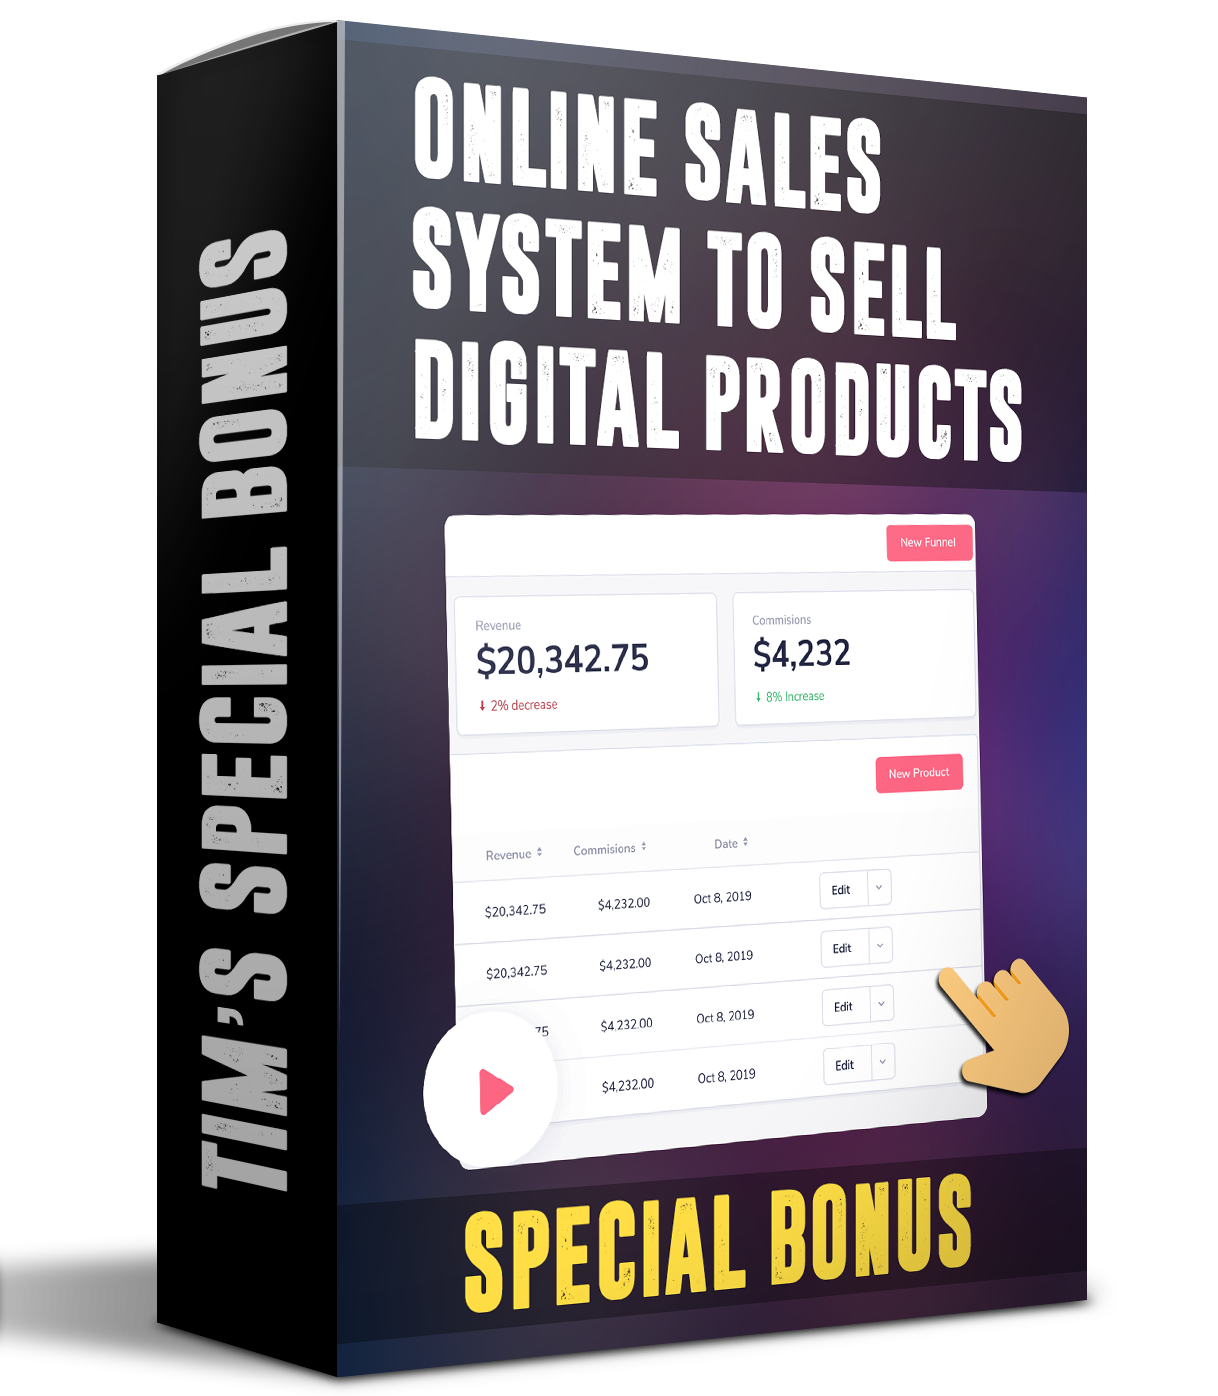 Online sales system